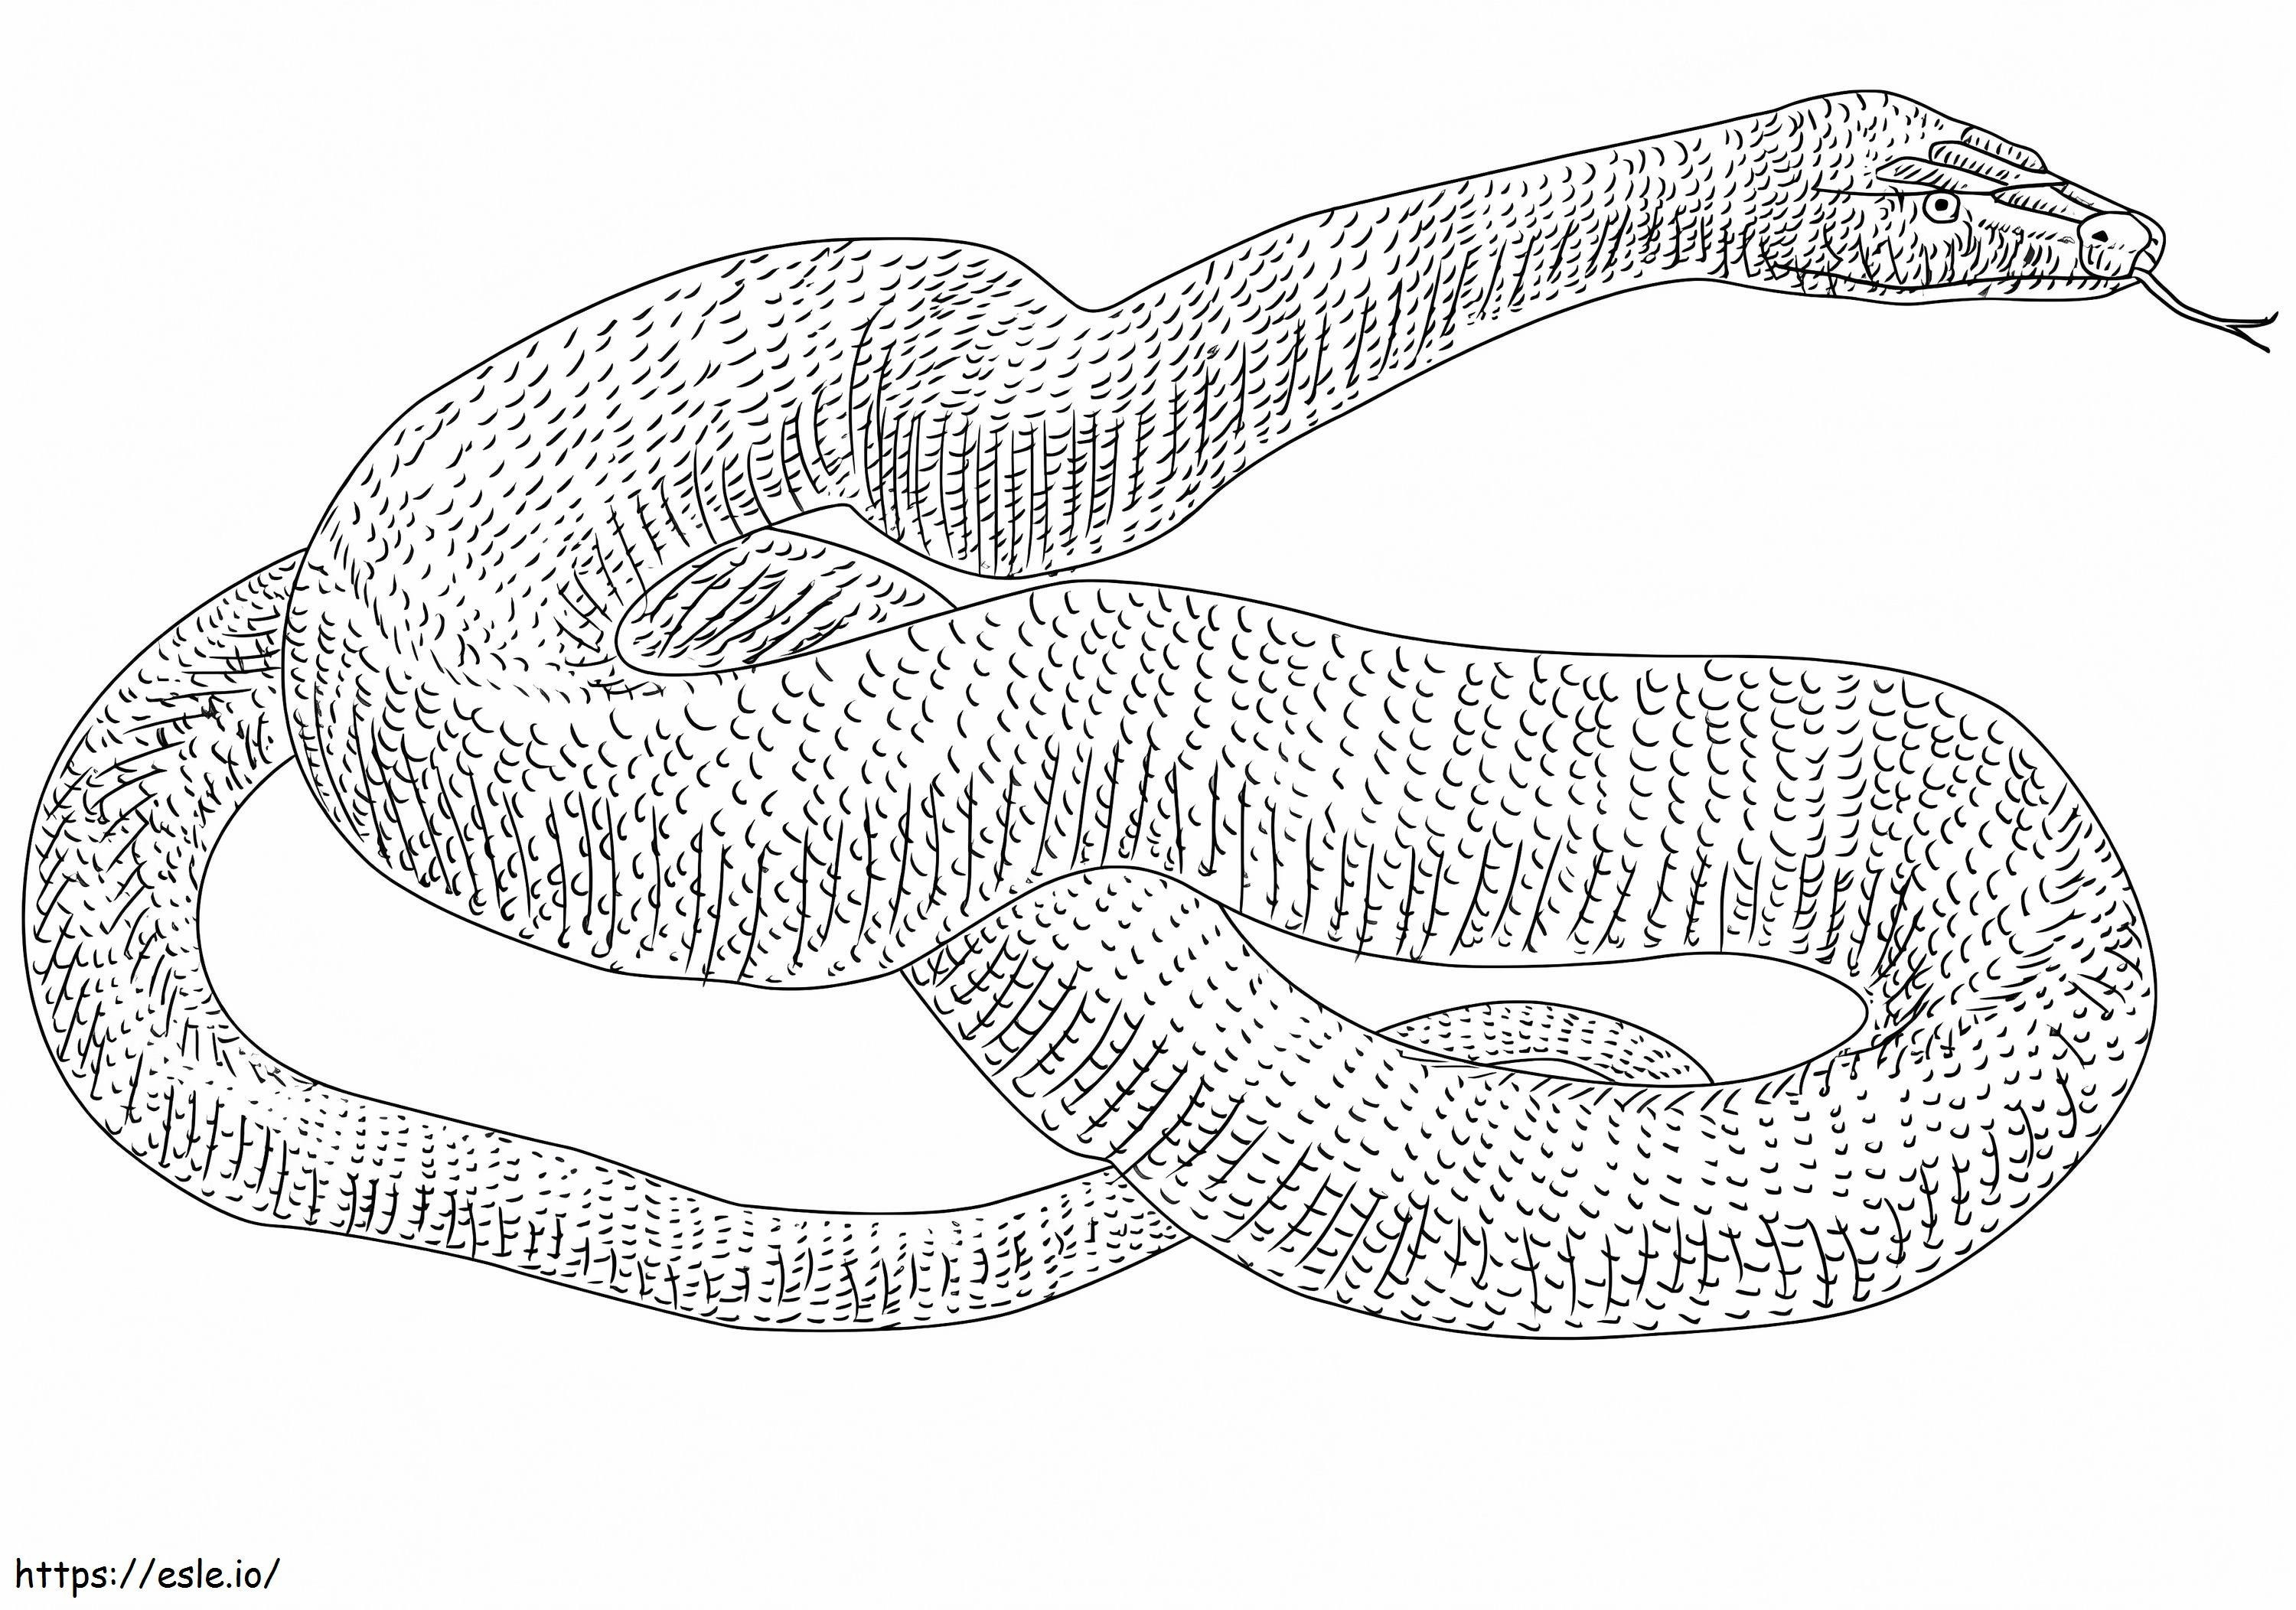 Anaconda Snake coloring page